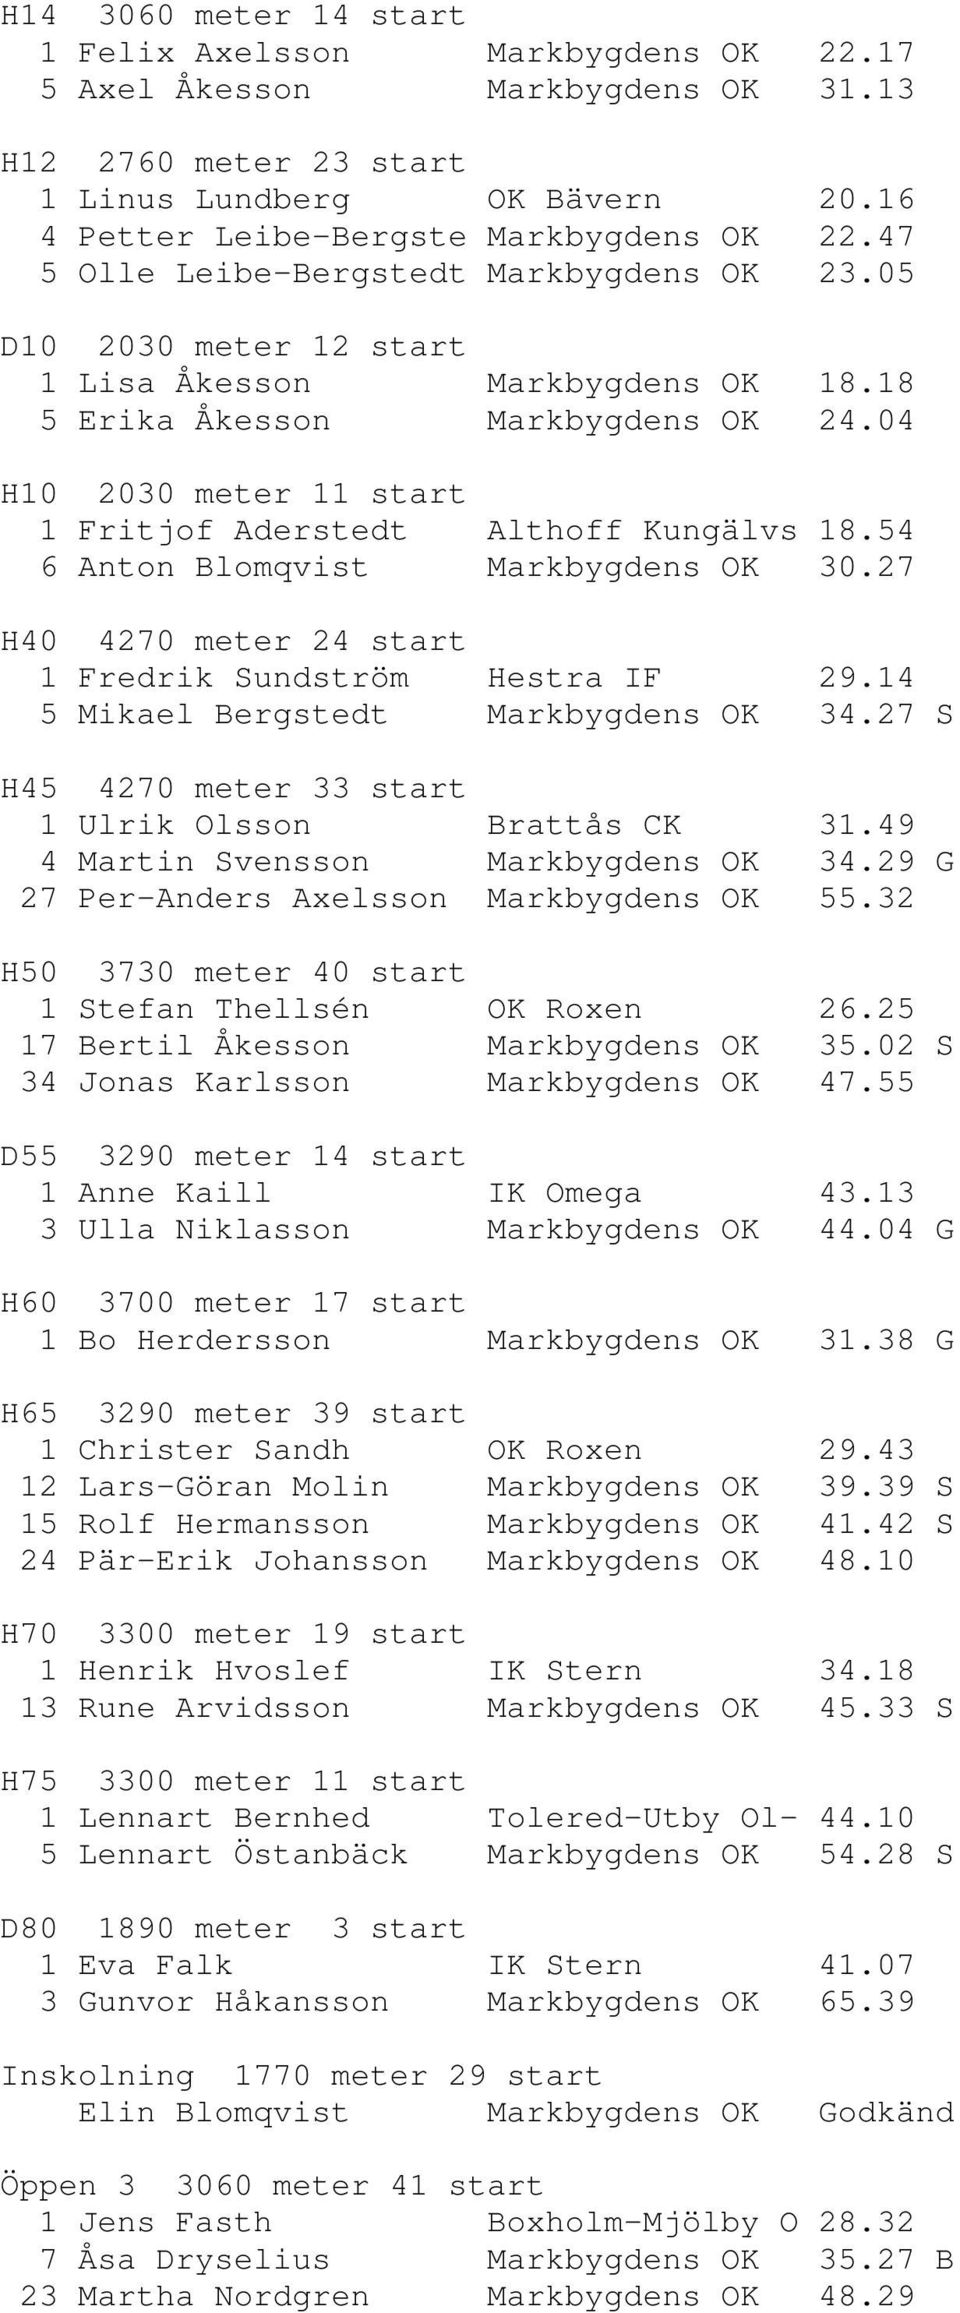 04 H10 2030 meter 11 start 1 Fritjof Aderstedt Althoff Kungälvs 18.54 6 Anton Blomqvist Markbygdens OK 30.27 H40 4270 meter 24 start 1 Fredrik Sundström Hestra IF 29.